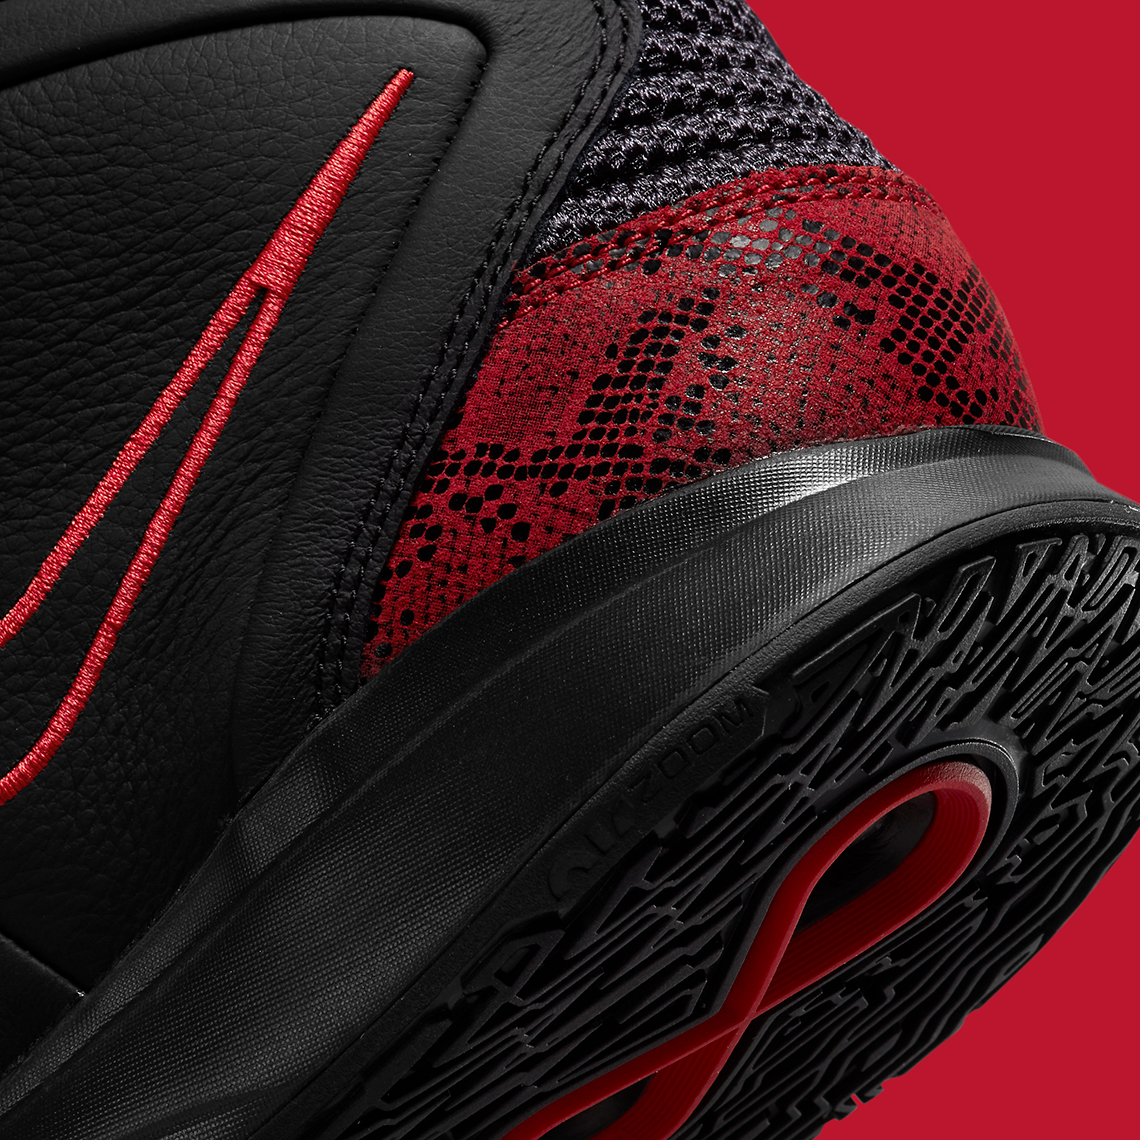 Nike Kyrie Infinity Black Red CZ0204-004 | SneakerNews.com